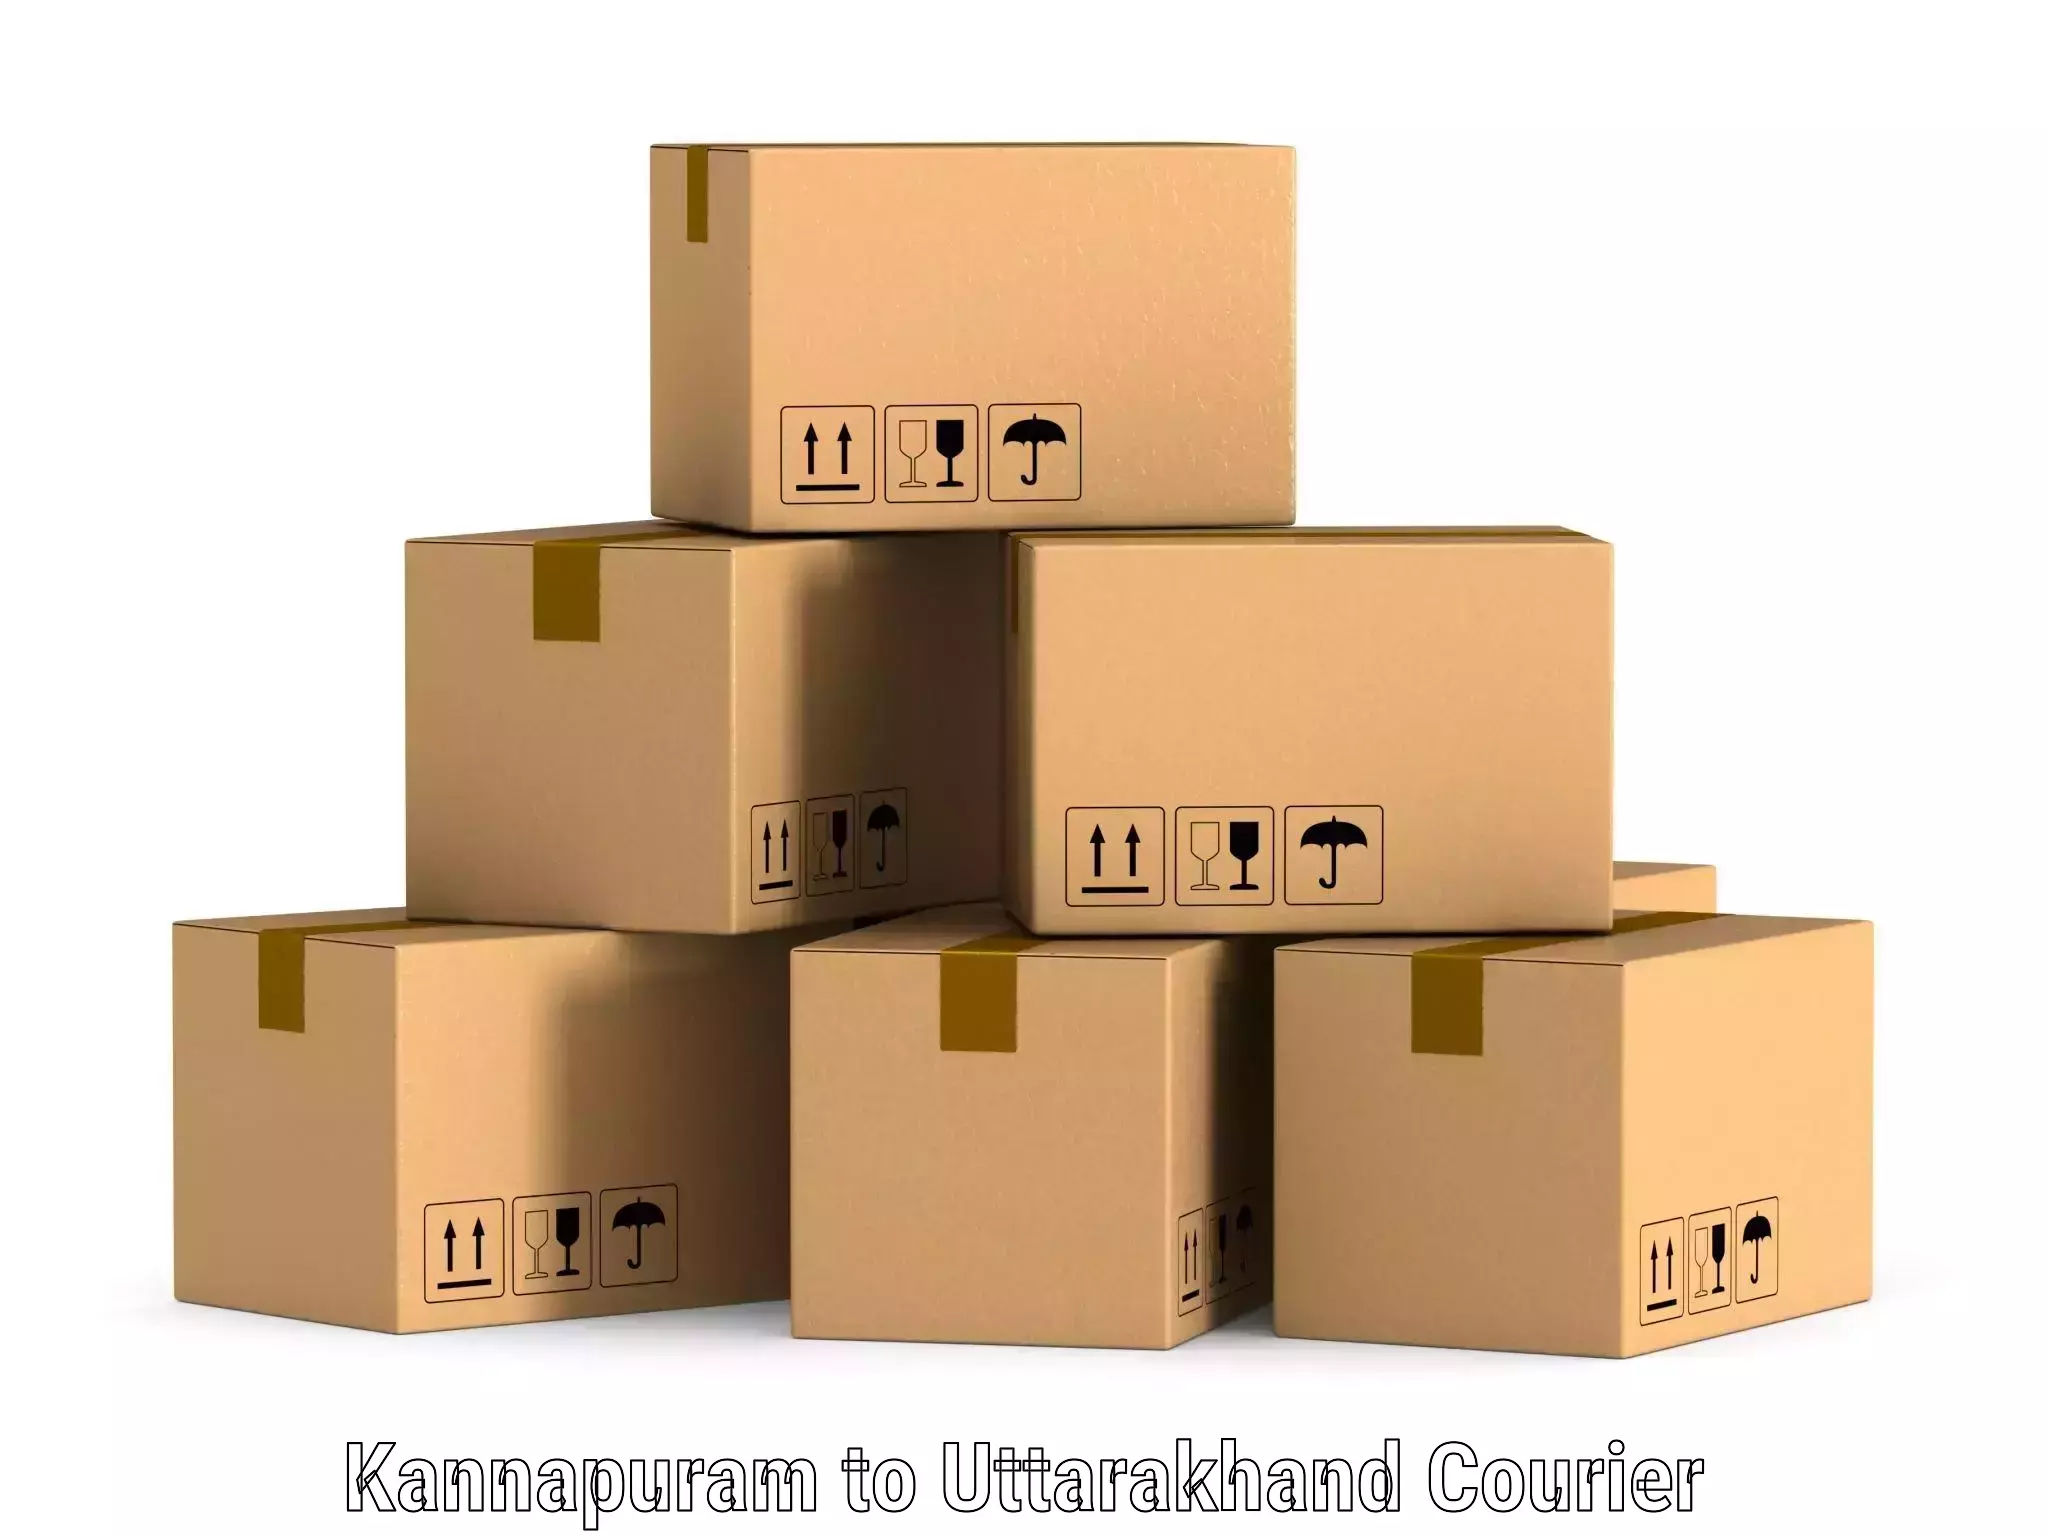 Same-day delivery solutions Kannapuram to Karnaprayag